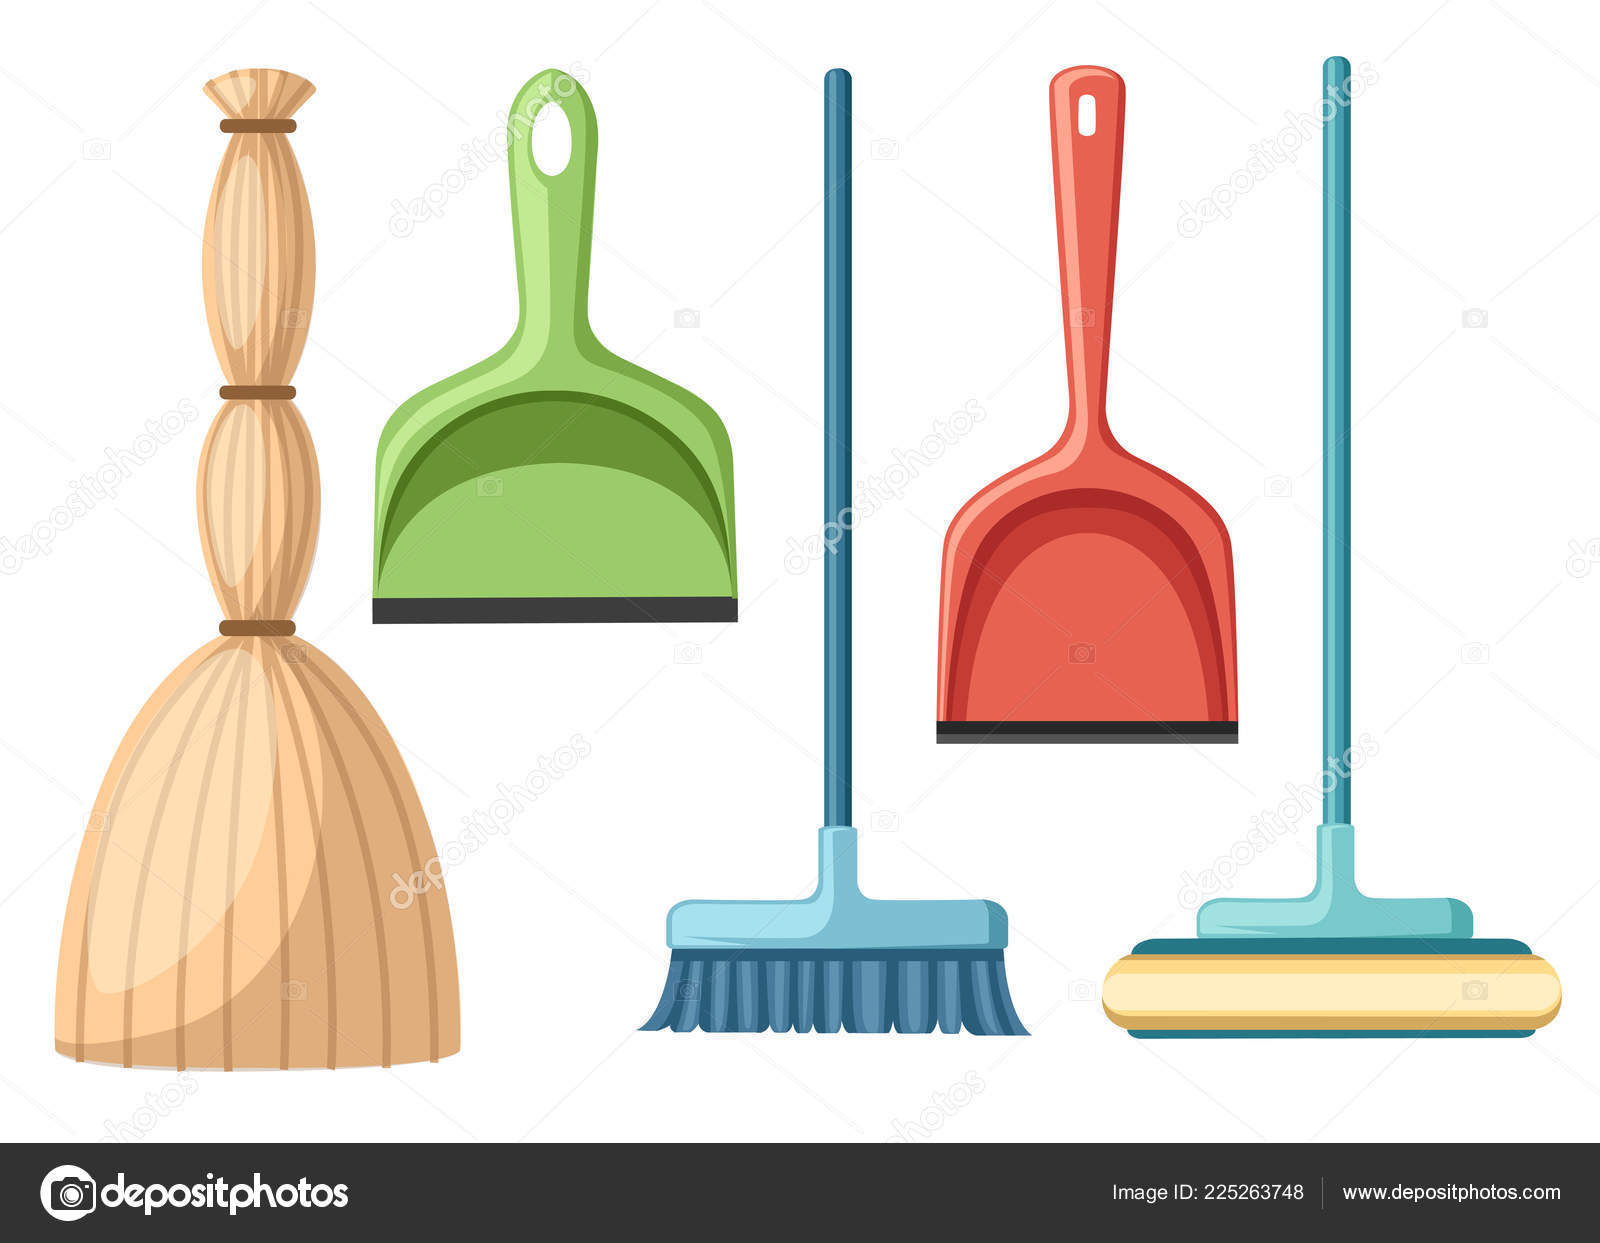 https://st4.depositphotos.com/6305928/22526/v/1600/depositphotos_225263748-stock-illustration-collection-household-cleaning-utensil-broom.jpg